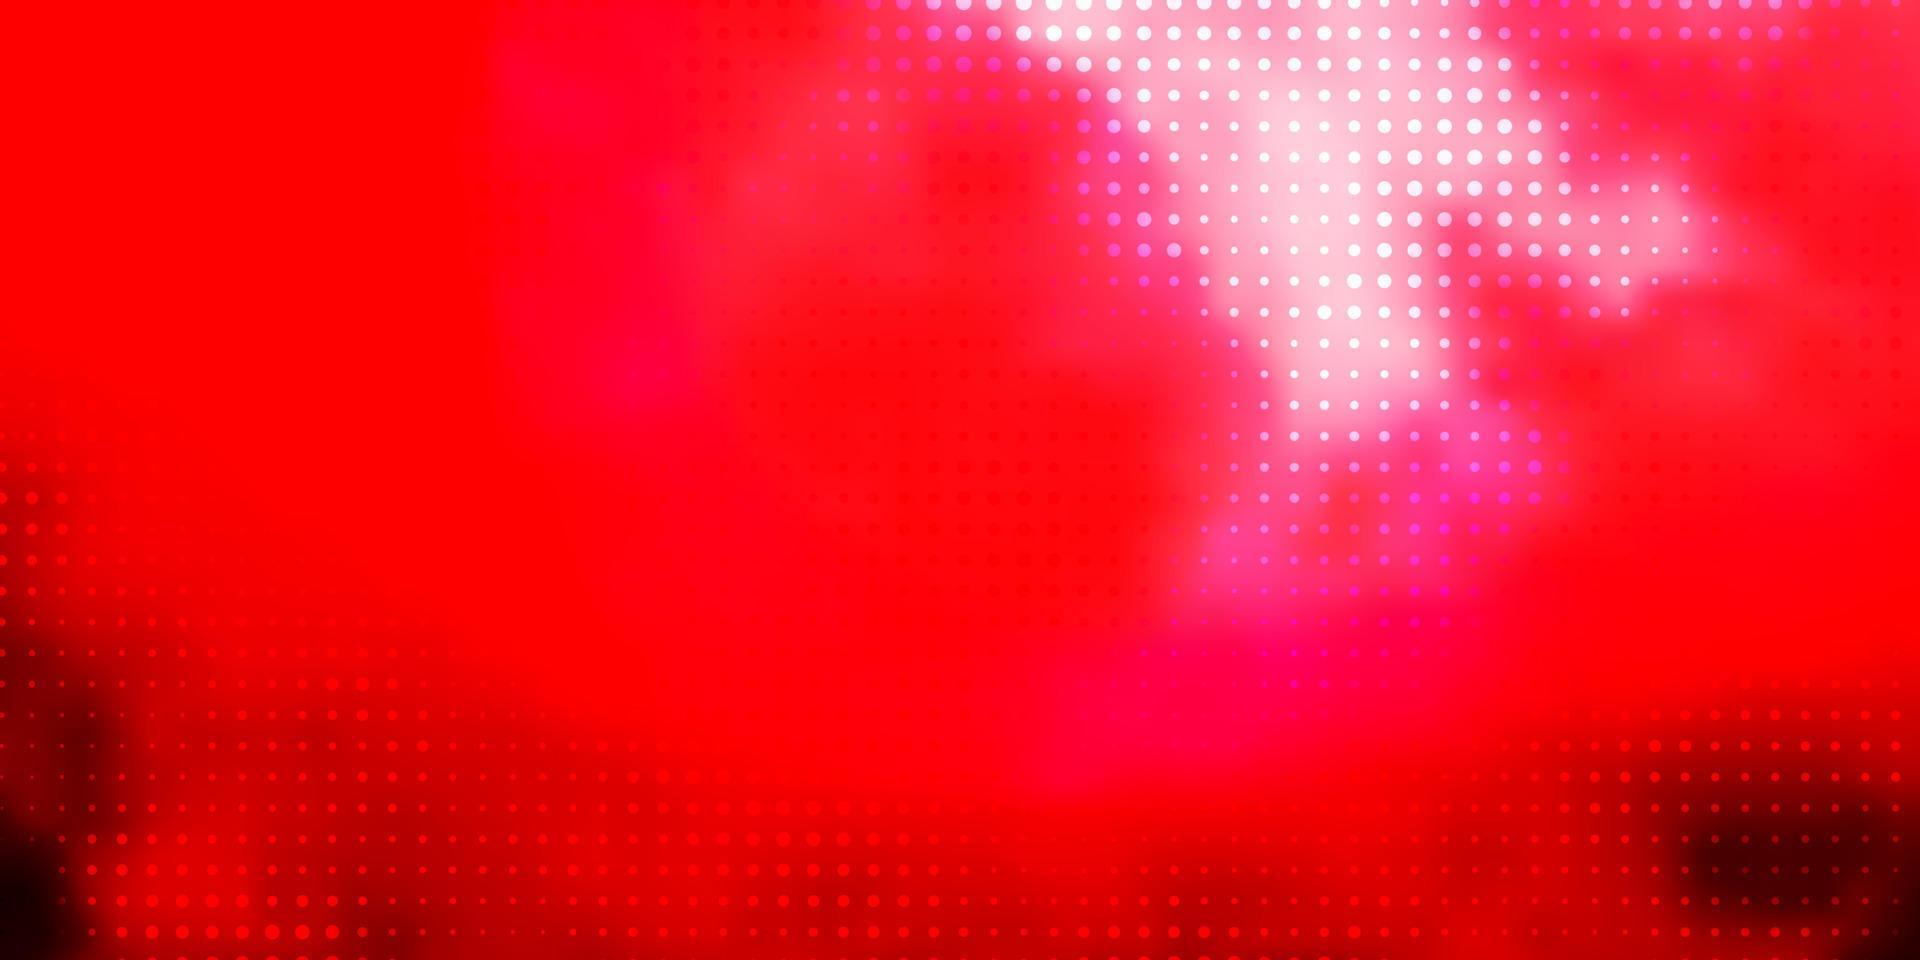 Fondo de vector rosa claro, rojo con burbujas.